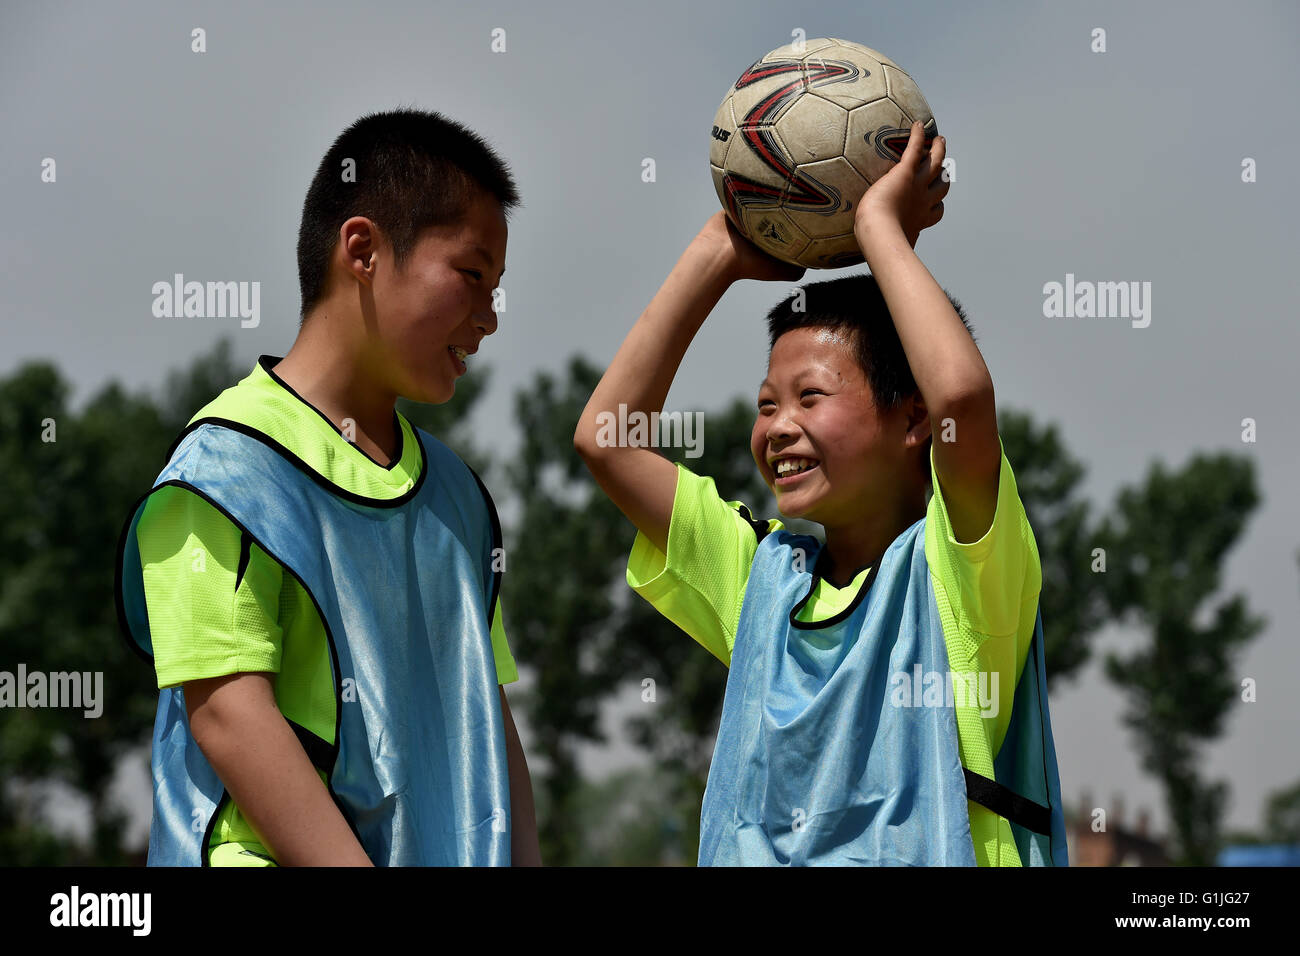 (160517)--SHANXI, 17. Mai 2016 (Xinhua)--Studenten der Sima-Grundschule üben Fußball in Xiaoyi Stadt, Nord-China Shanxi Provinz, 17. Mai 2016. Viele Dorfschulen haben weitere Sportkurse während dieser Jahre einrichten wie sie ermutigt werden, mehr Sportunterricht hinzufügen, wenn die Bedingungen dies zulassen. Eine 2014-Studie ergab, dass 23 Prozent der chinesischen Jungen unter 20 Jahren übergewichtig waren oder fettleibig, während die Zahl lag bei 14 Prozent für Mädchen.  (Xinhua/Zhan Yan) (Wyl) Stockfoto